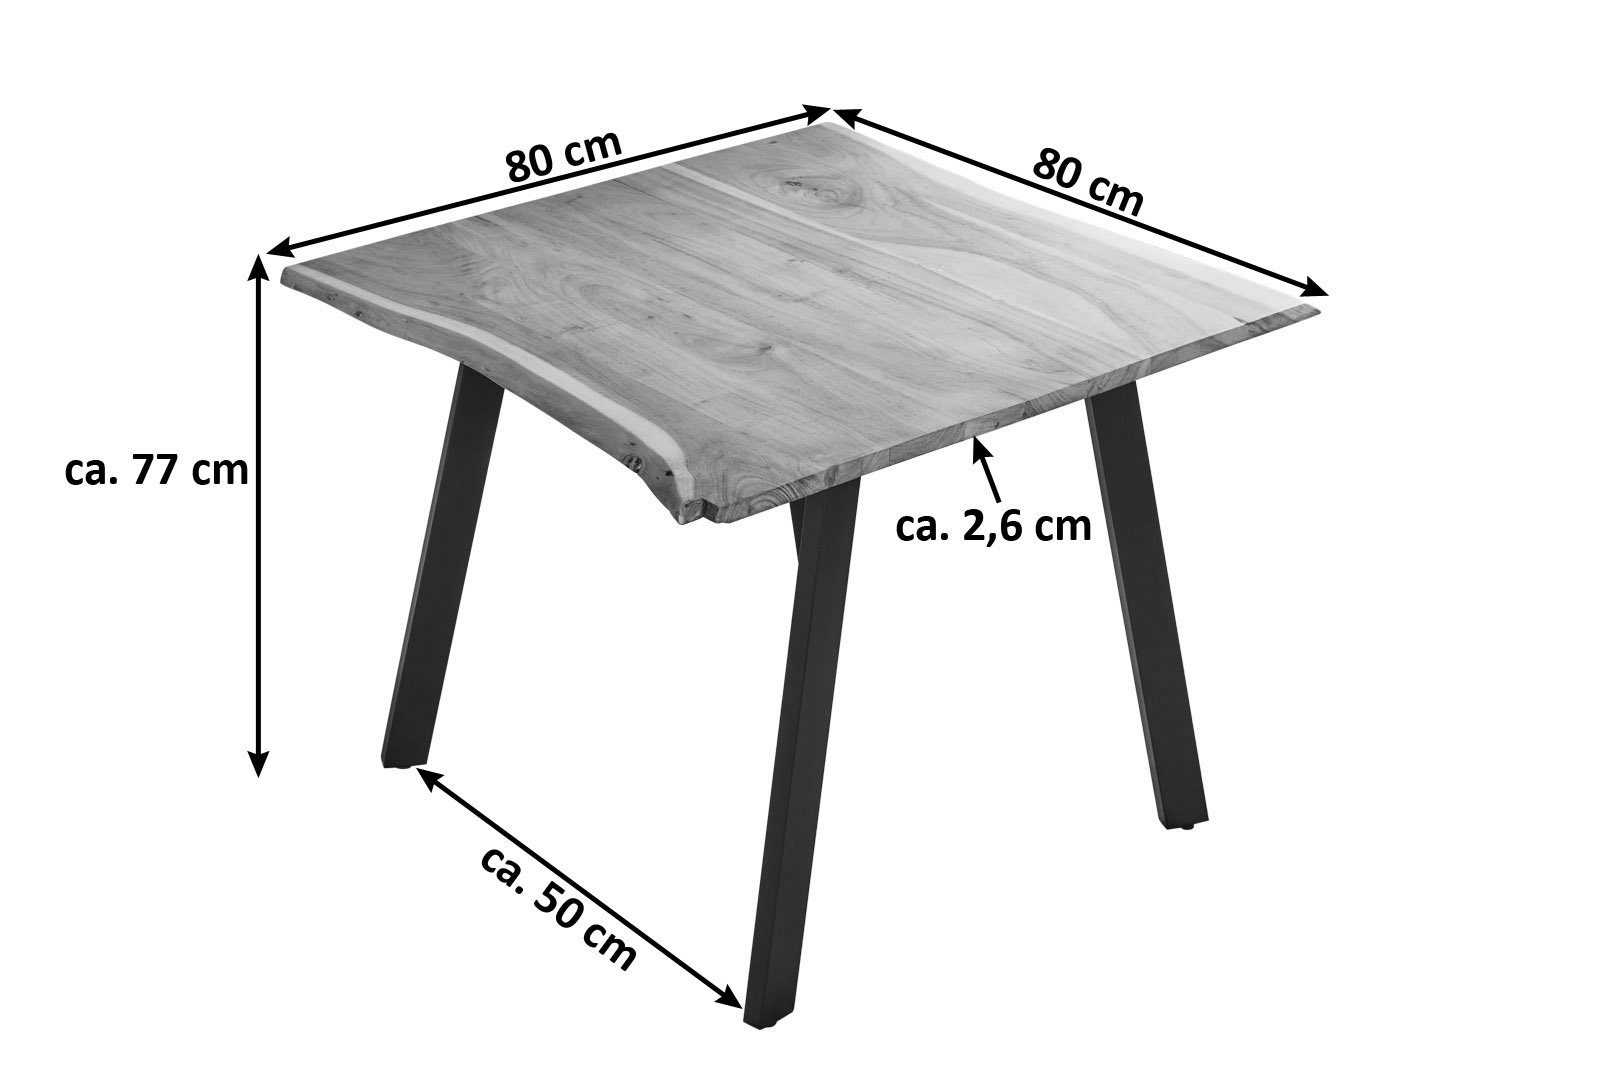 SAM® Essgruppe Gadwal, Akazienholz, + Baumkante, naturfarben, 2 schwarz Stühle Metallbeine